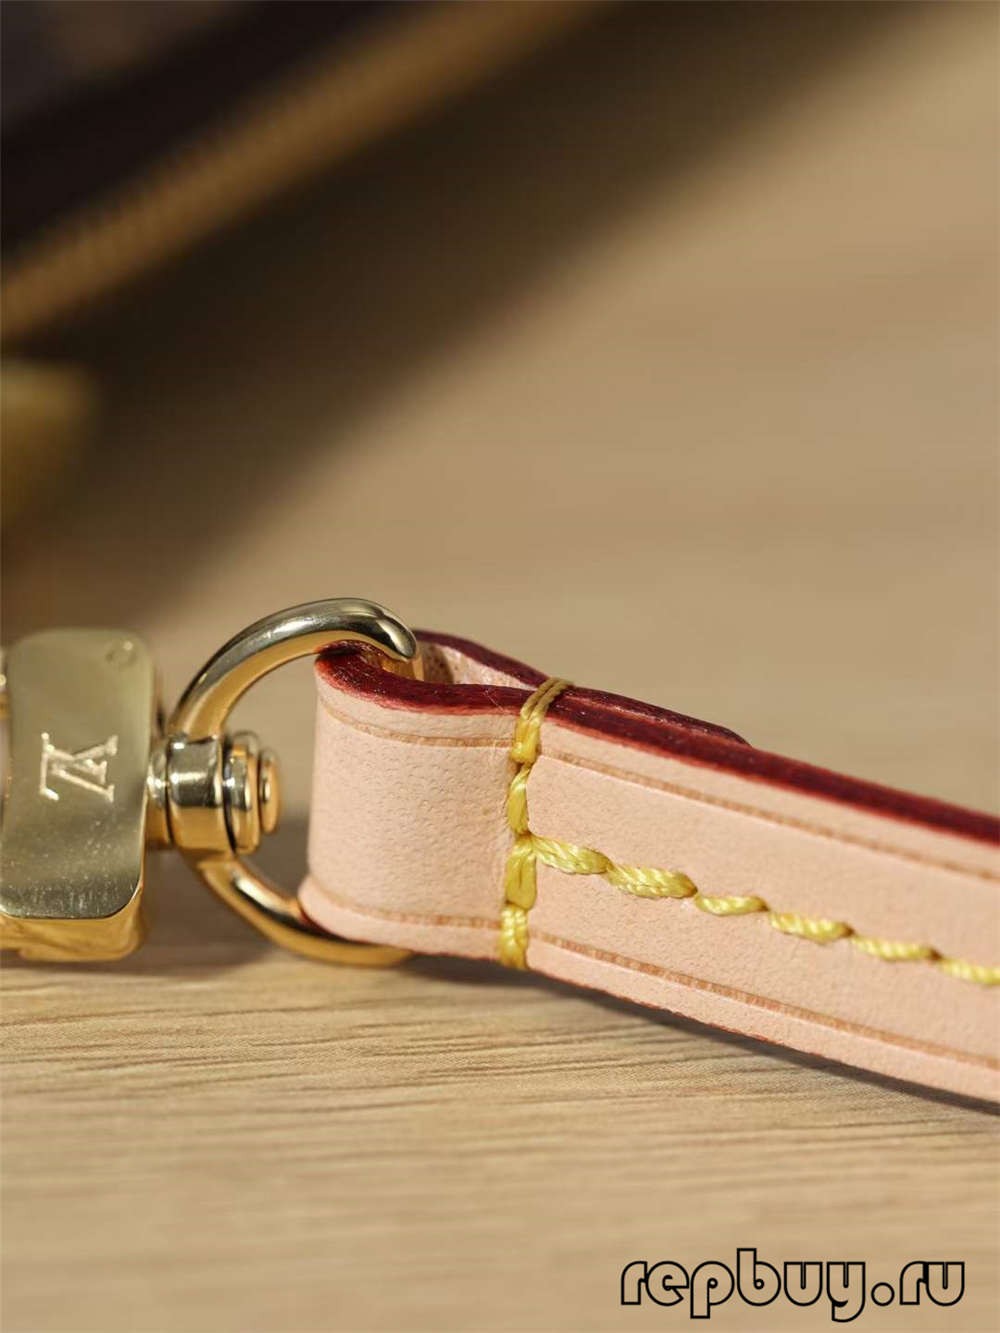 Louis Vuitton M40712 Pochette Accessoires top replica handbags Closure Logo and hardware details (2022 Special)-Best Quality Fake designer Bag Review, Replica designer bag ru